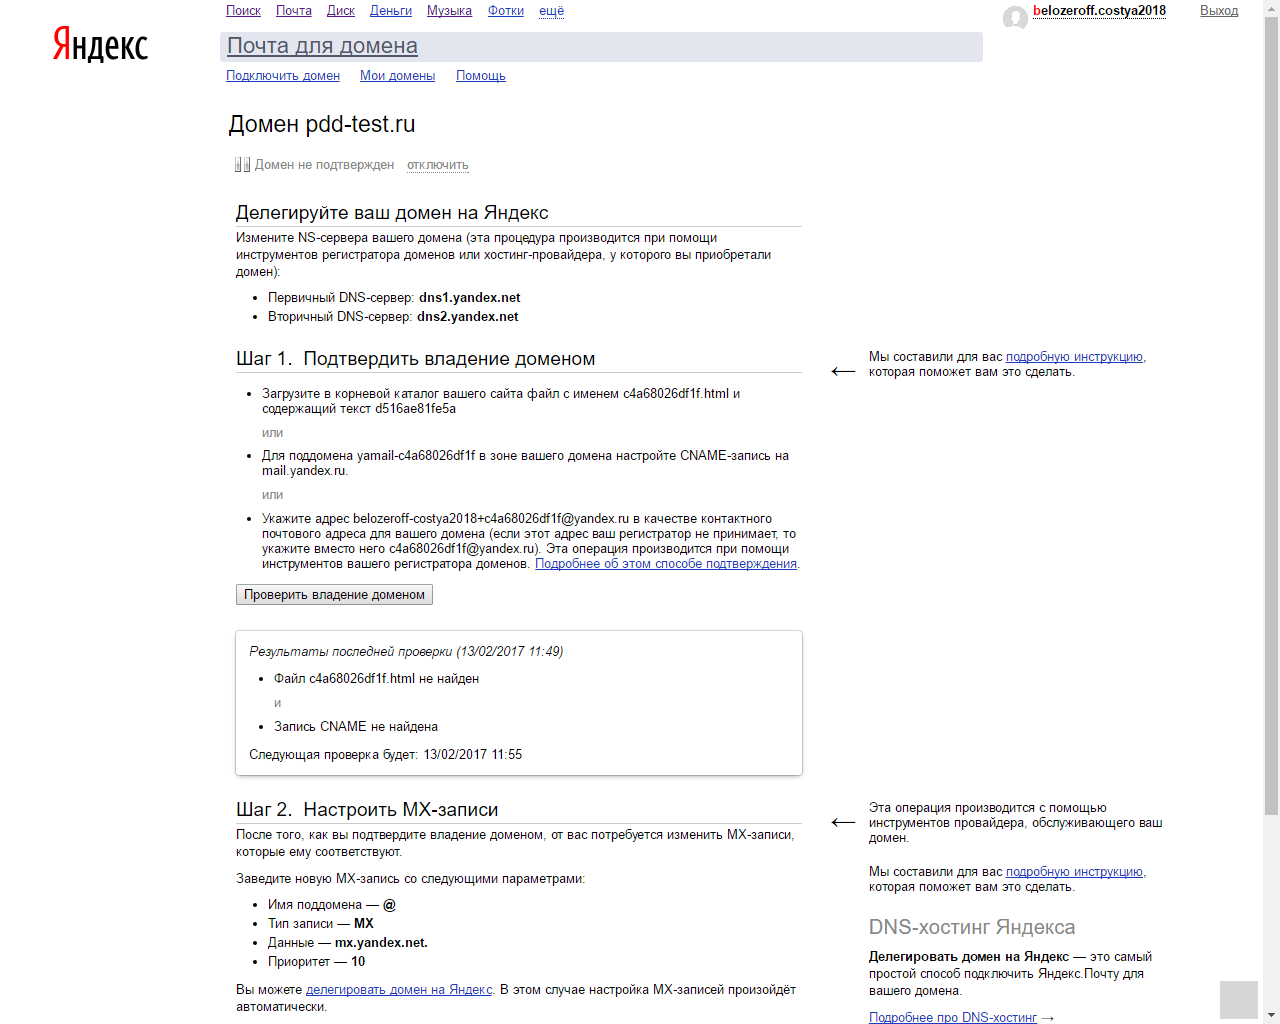 Активация домена на Яндексе